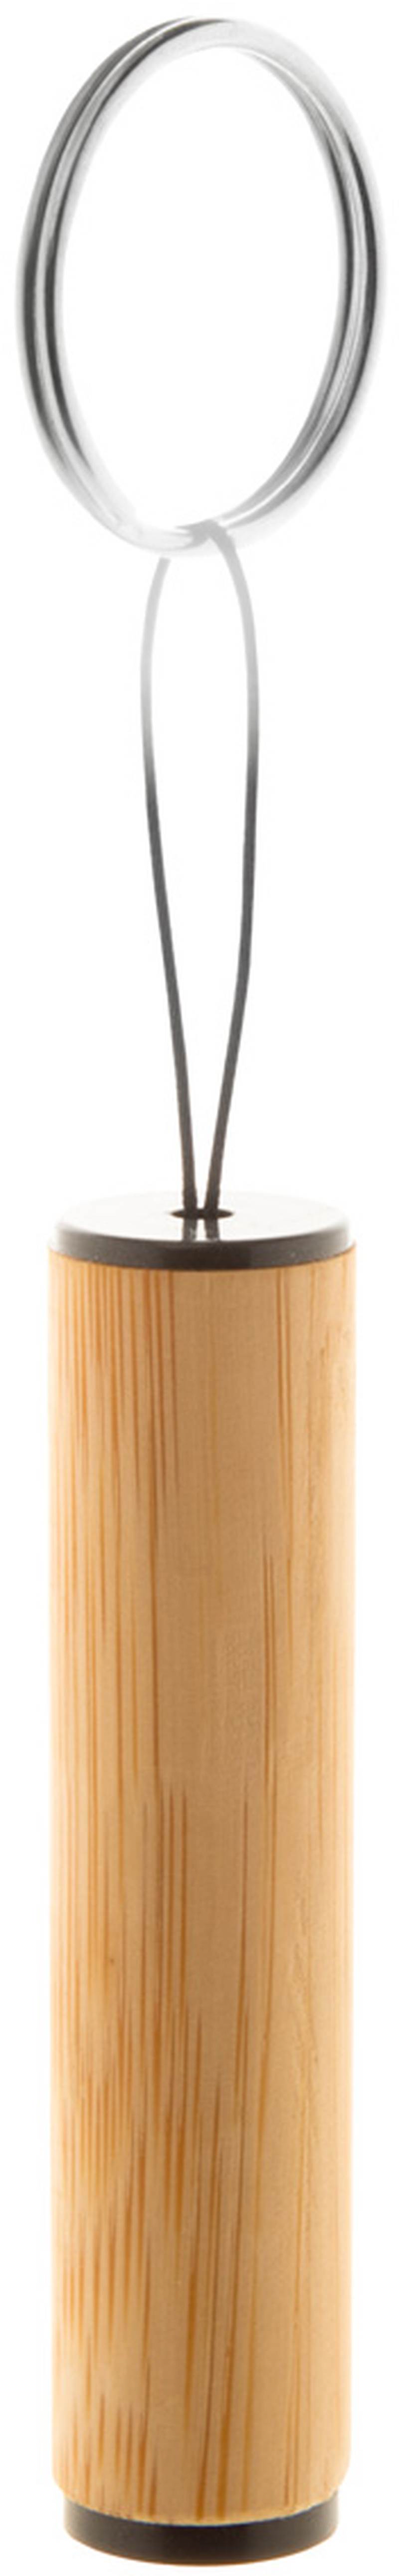 Baterka z bambusu Lampoo